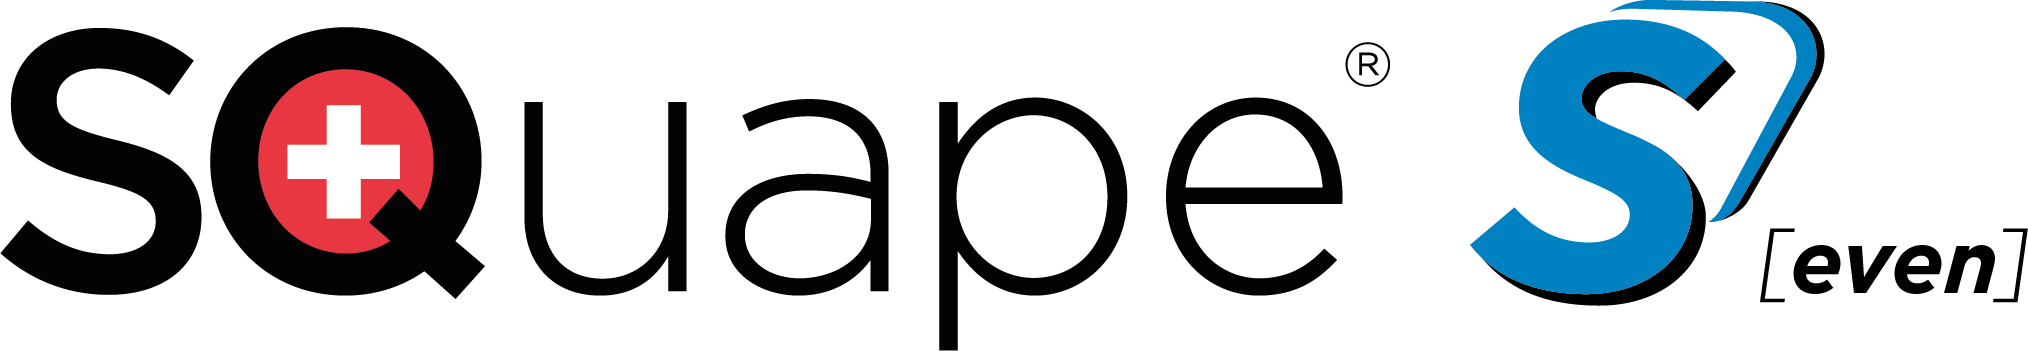 Squape_Seven_Logo